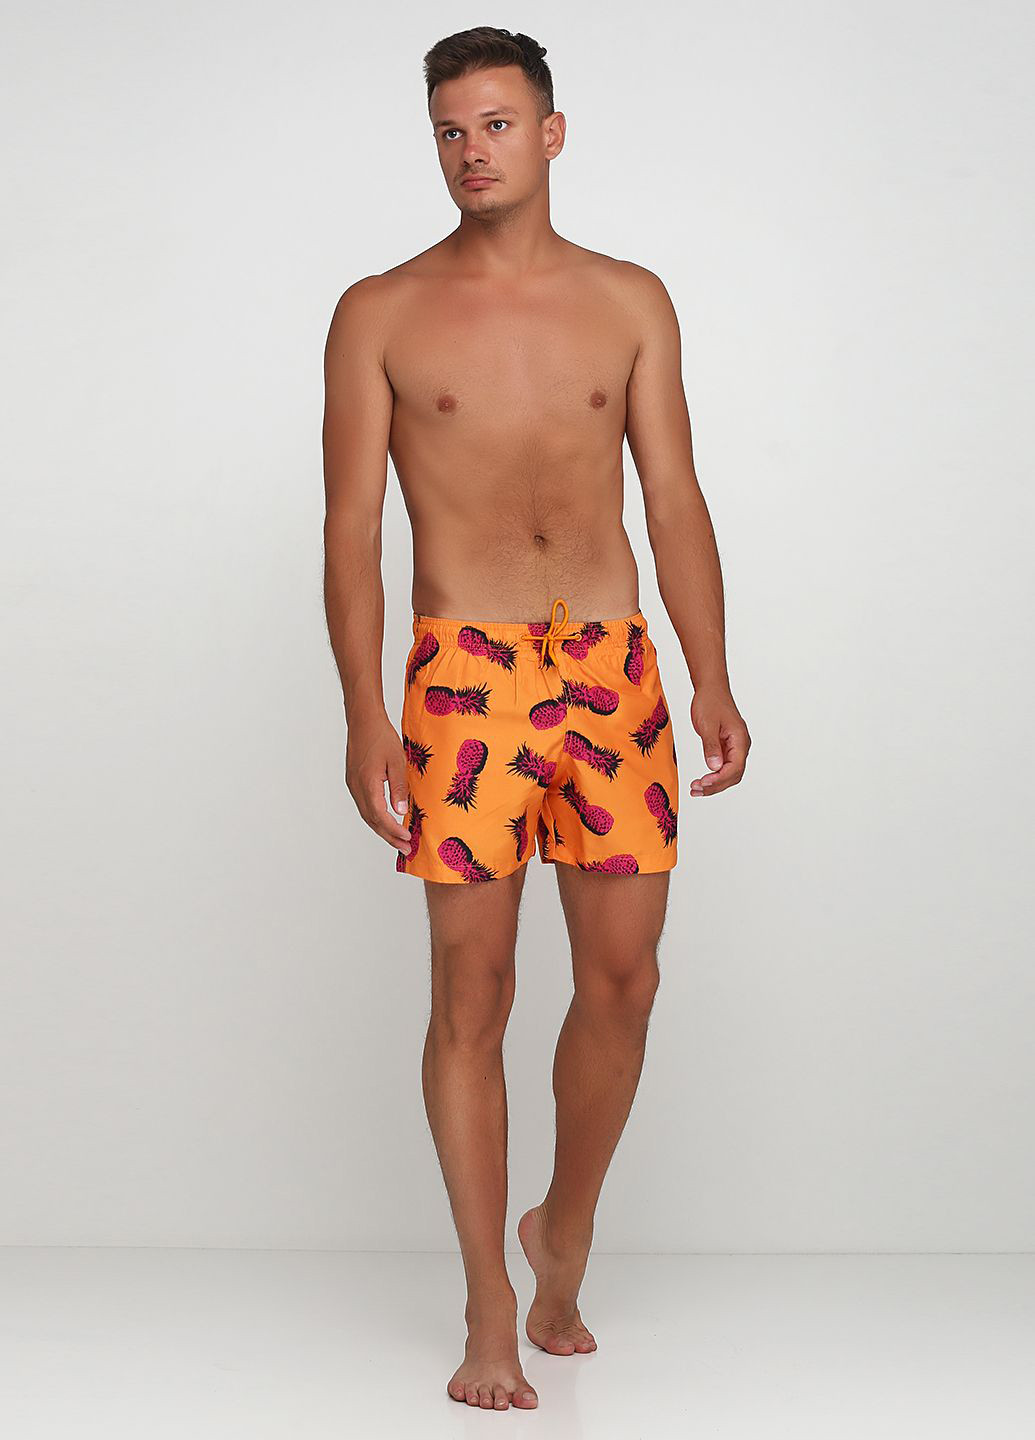 Шорты H&M рисунки оранжевые пляжные полиэстер